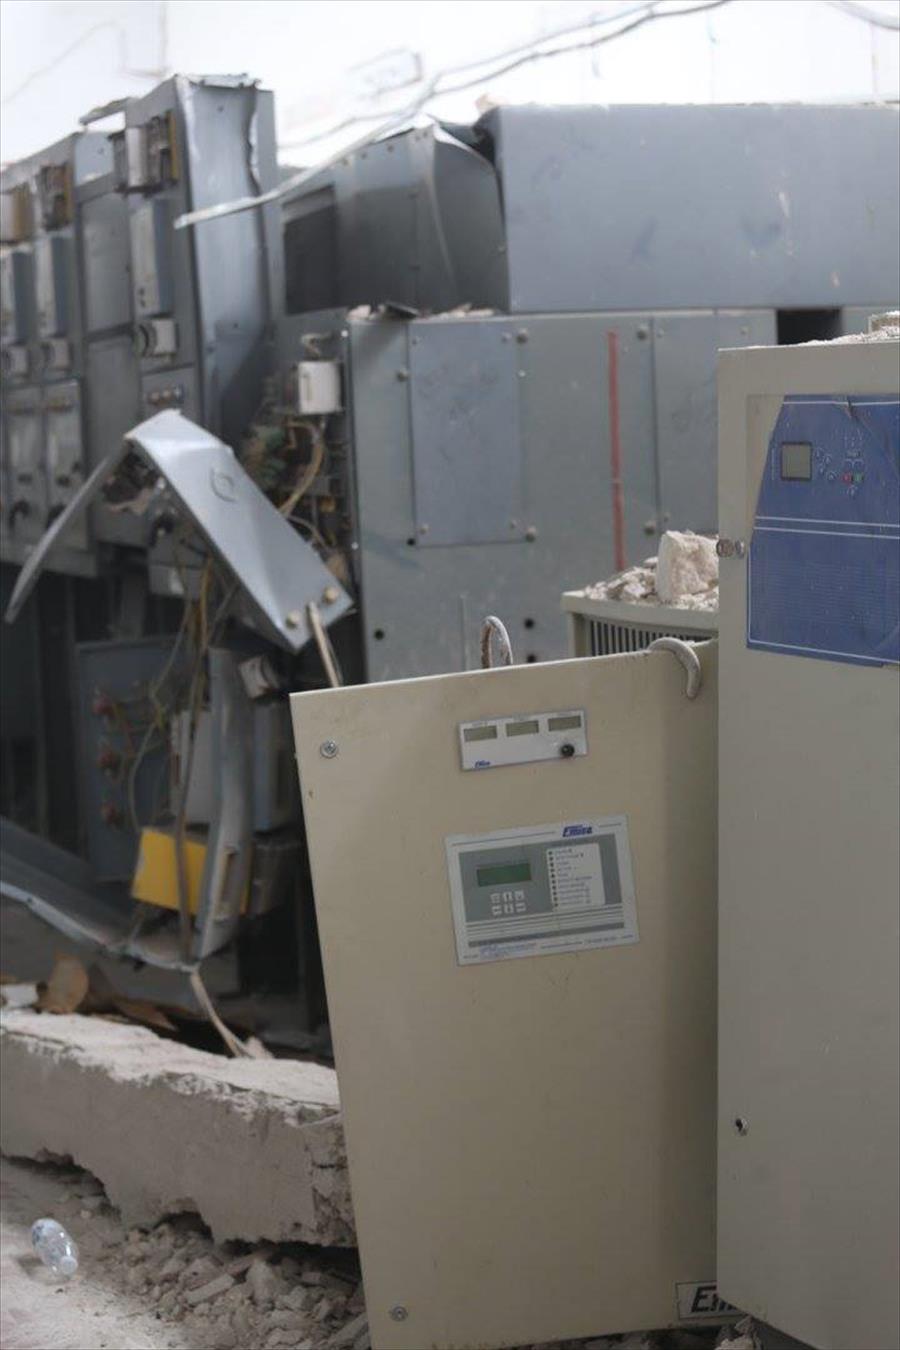 بالصور: تدمير كامل لمحطة أبوسليم الكهربائية جراء الاشتباكات الأخيرة